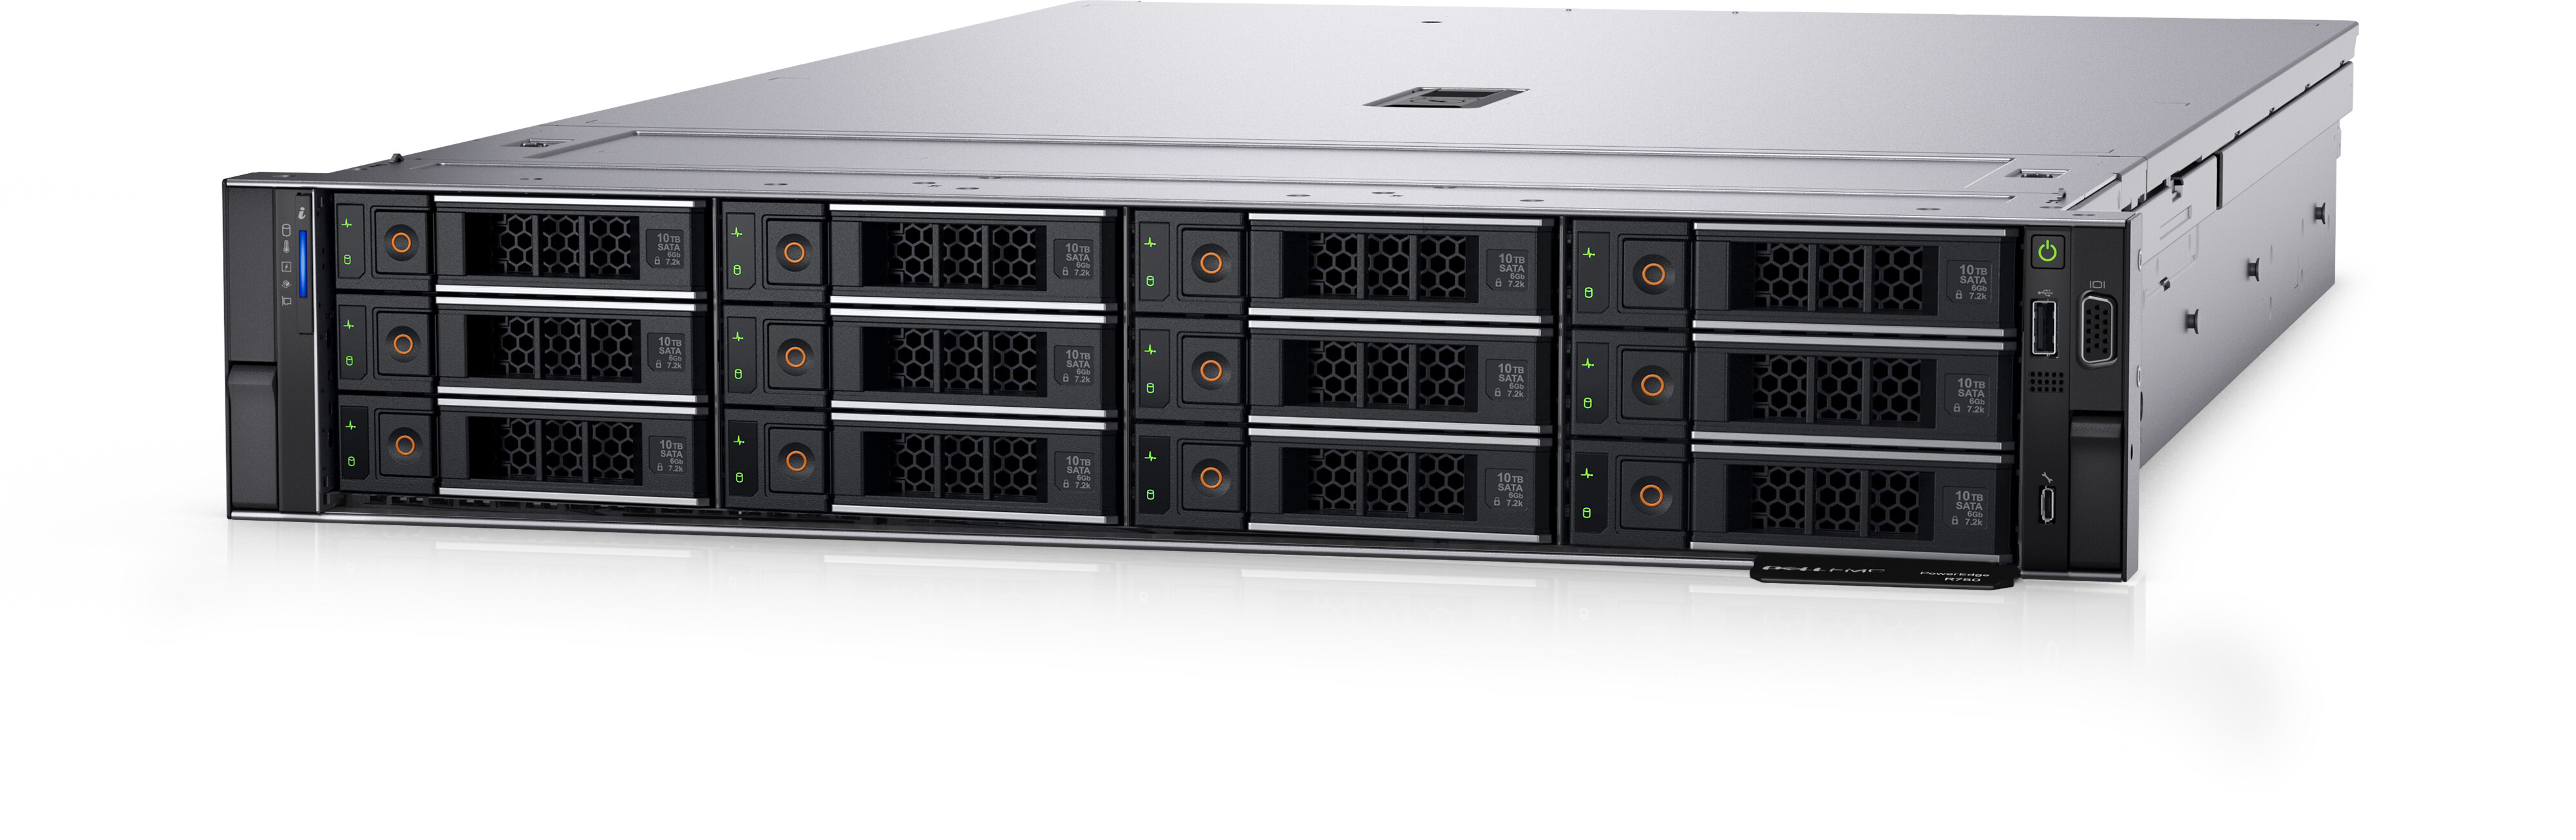 Dell PowerEdge Rack Server Models - Info & Prices